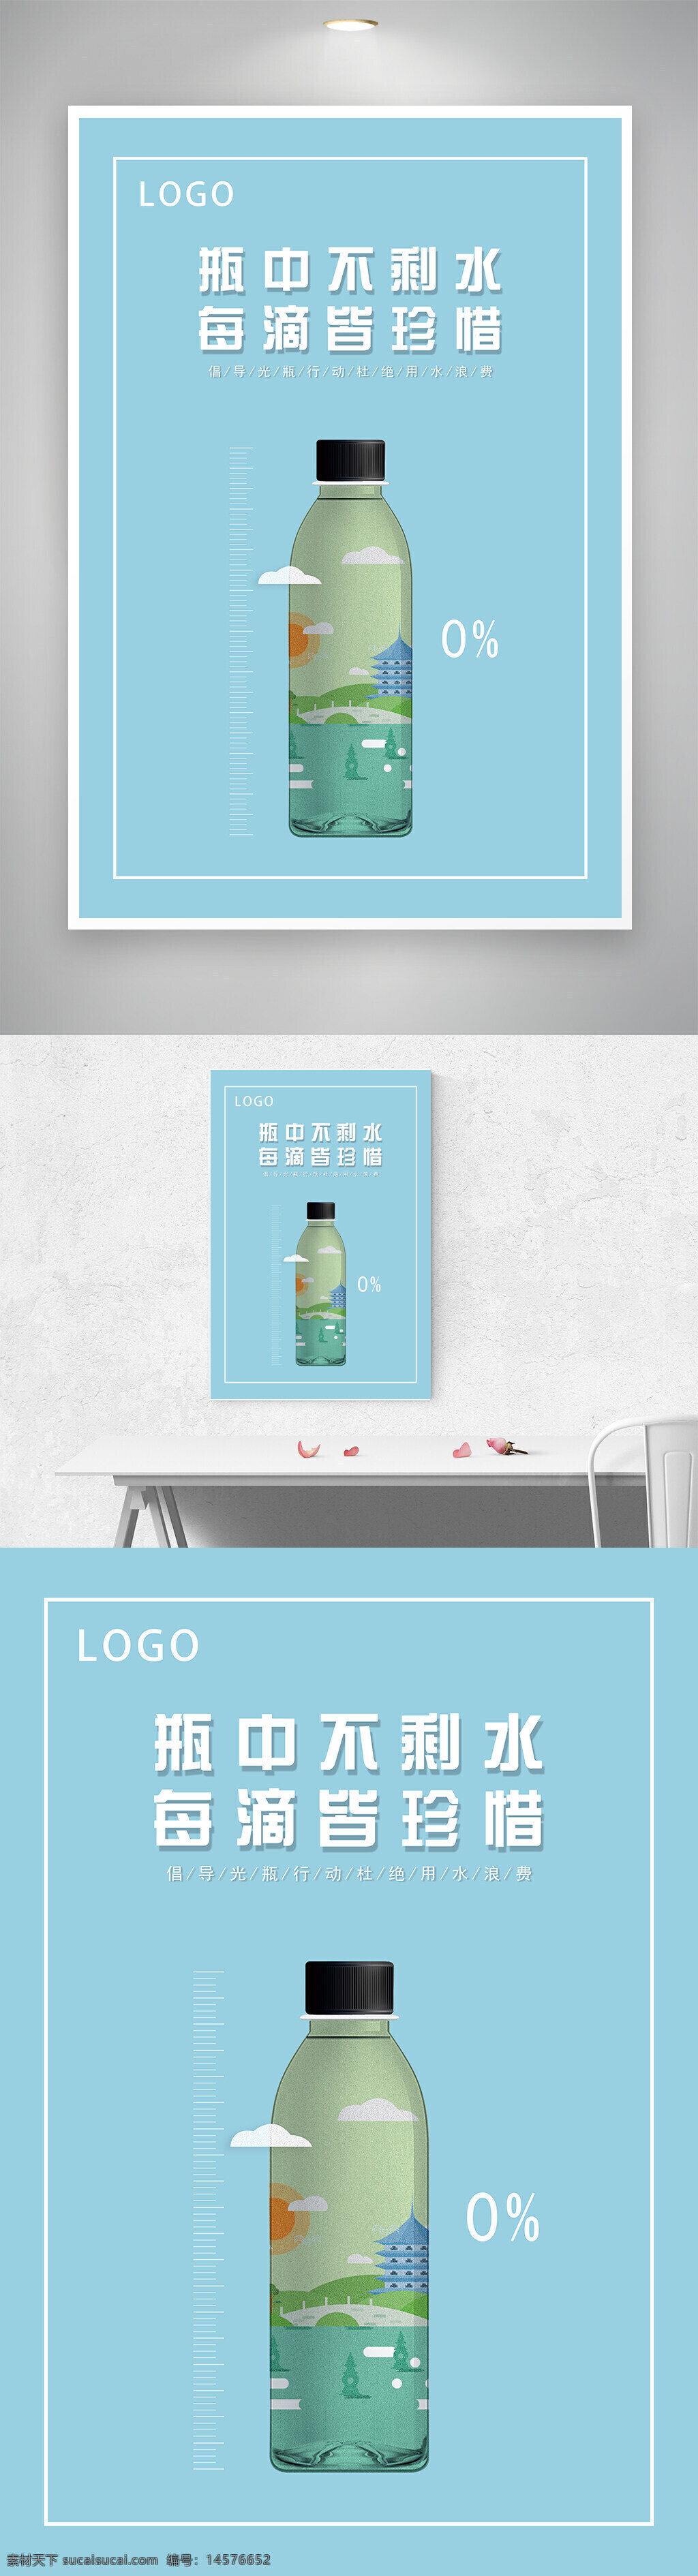 光瓶行动 宣传 海报 公益 展板 设计 广告设计